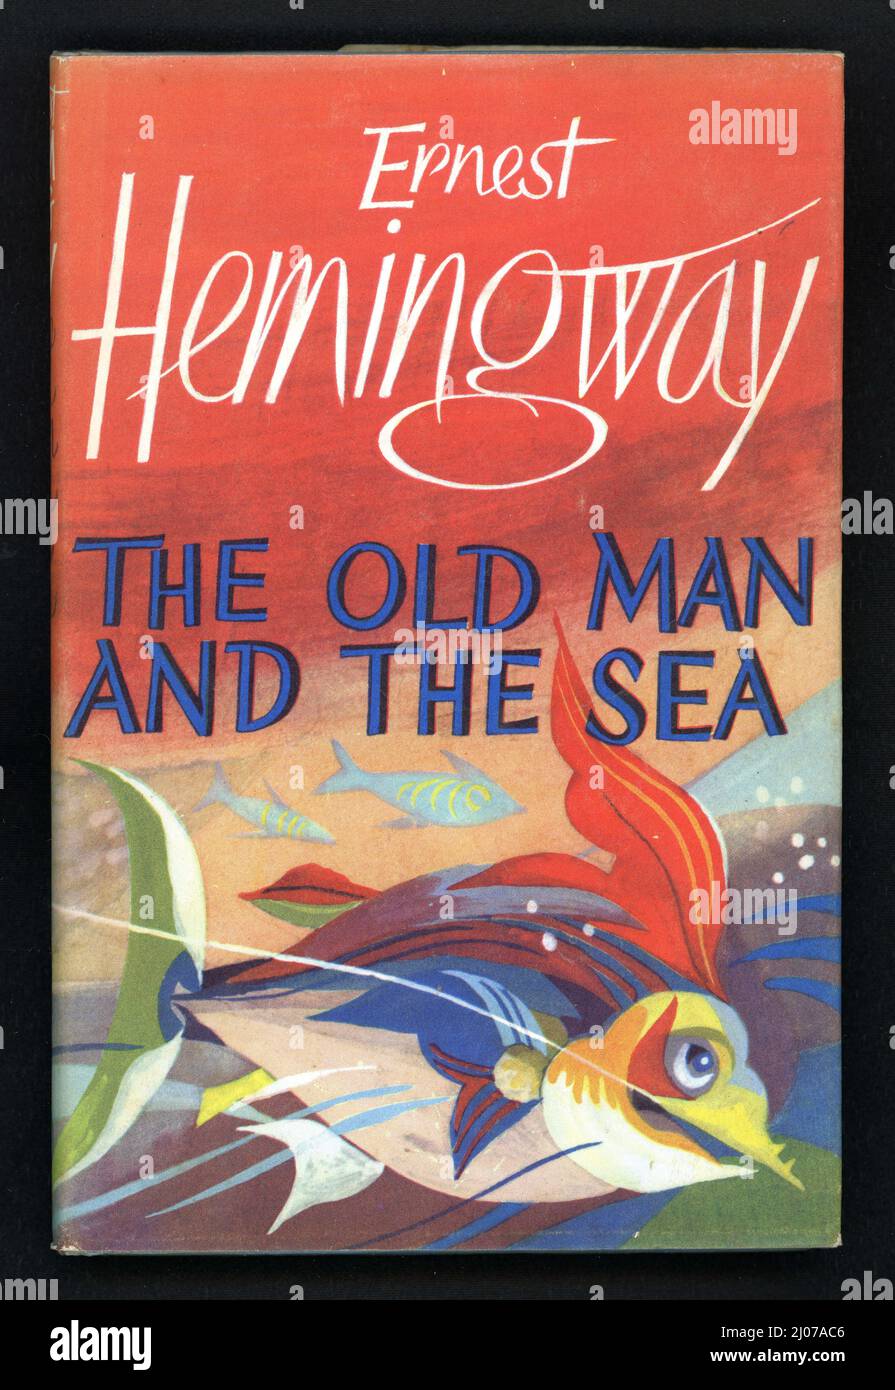 Magnifique original rétro / milieu de siècle couverture de livre illustré de 'l'ancien homme et la mer', publié en 1952 écrit par le célèbre auteur américain, Ernest Hemingway. Première publication britannique. Banque D'Images